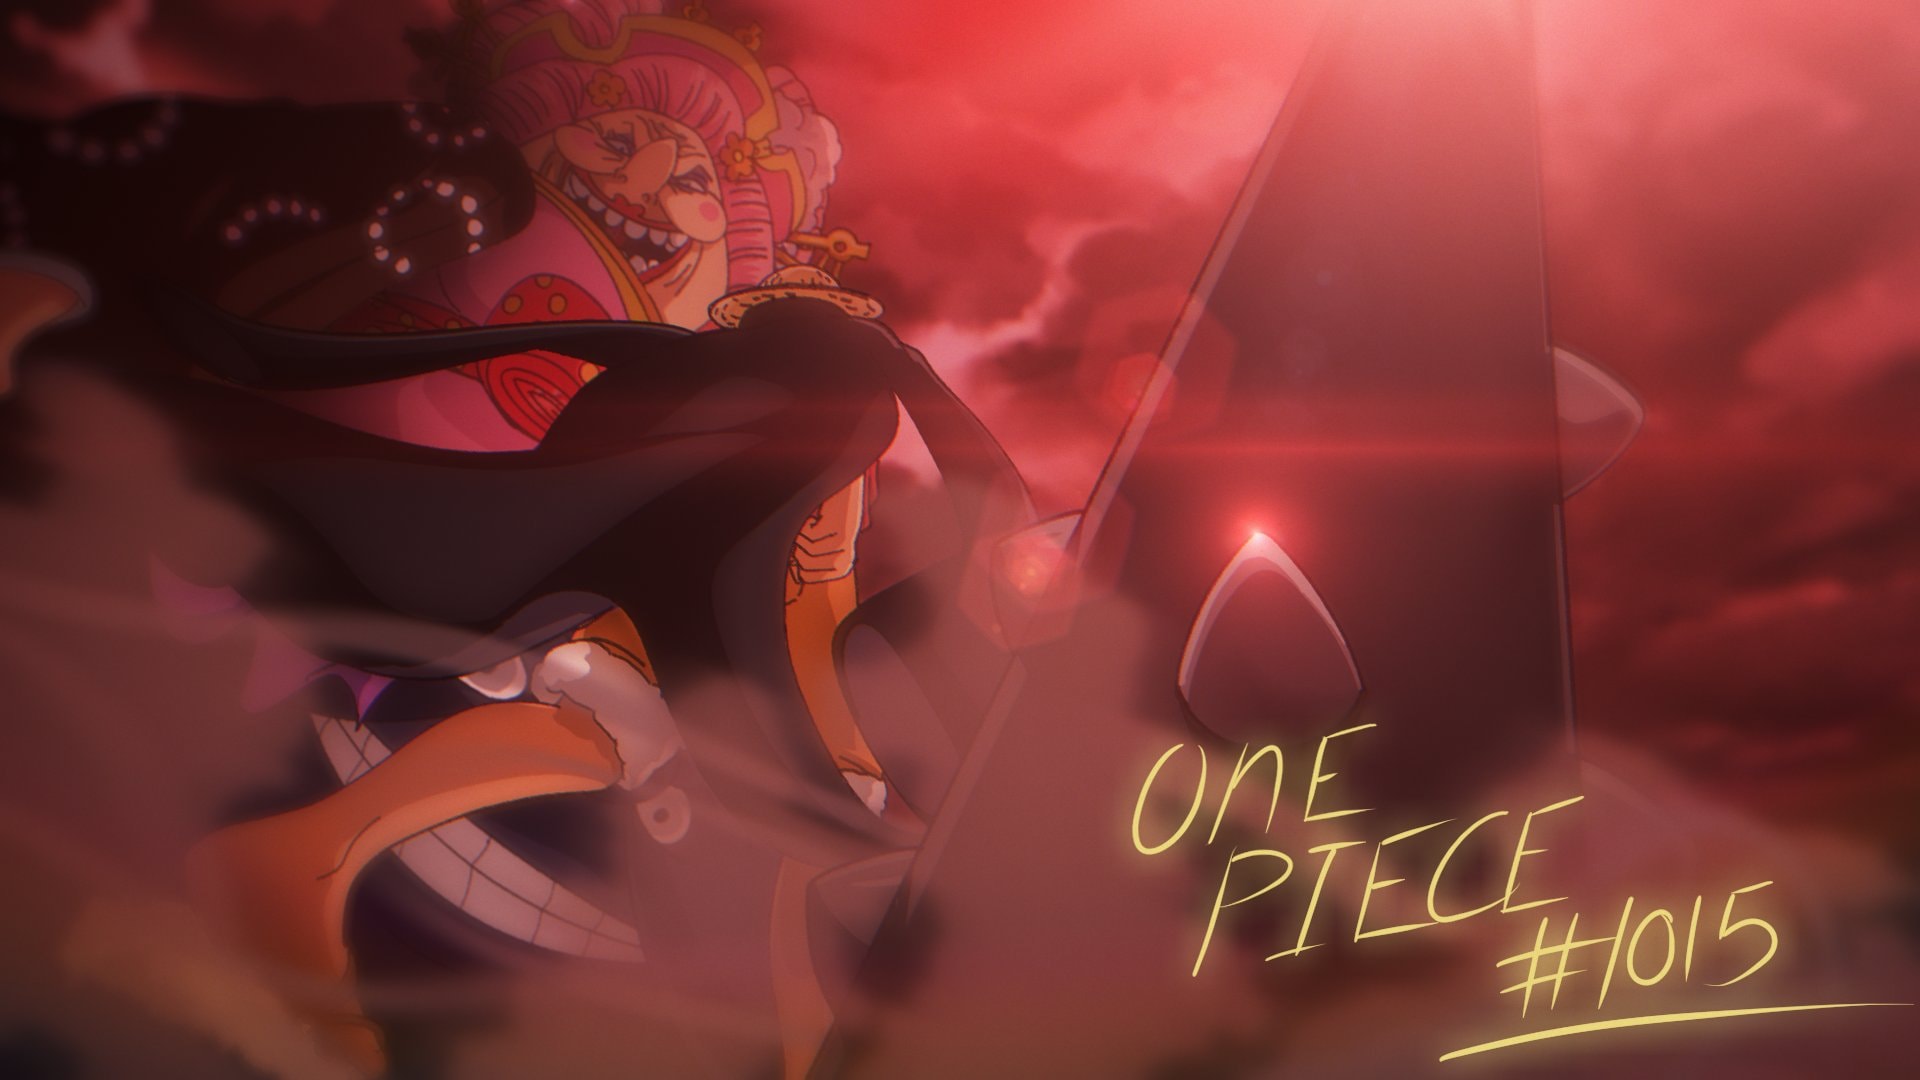 Hãy cùng đón xem tập 1015 của One Piece. Sự xuất hiện của nhân vật mới hứa hẹn mang đến cho bạn những trải nghiệm đầy kịch tính và hấp dẫn. Với những hình ảnh đậm nét, bạn sẽ không thể bỏ lỡ tập này của One Piece. Cùng đón xem thôi!